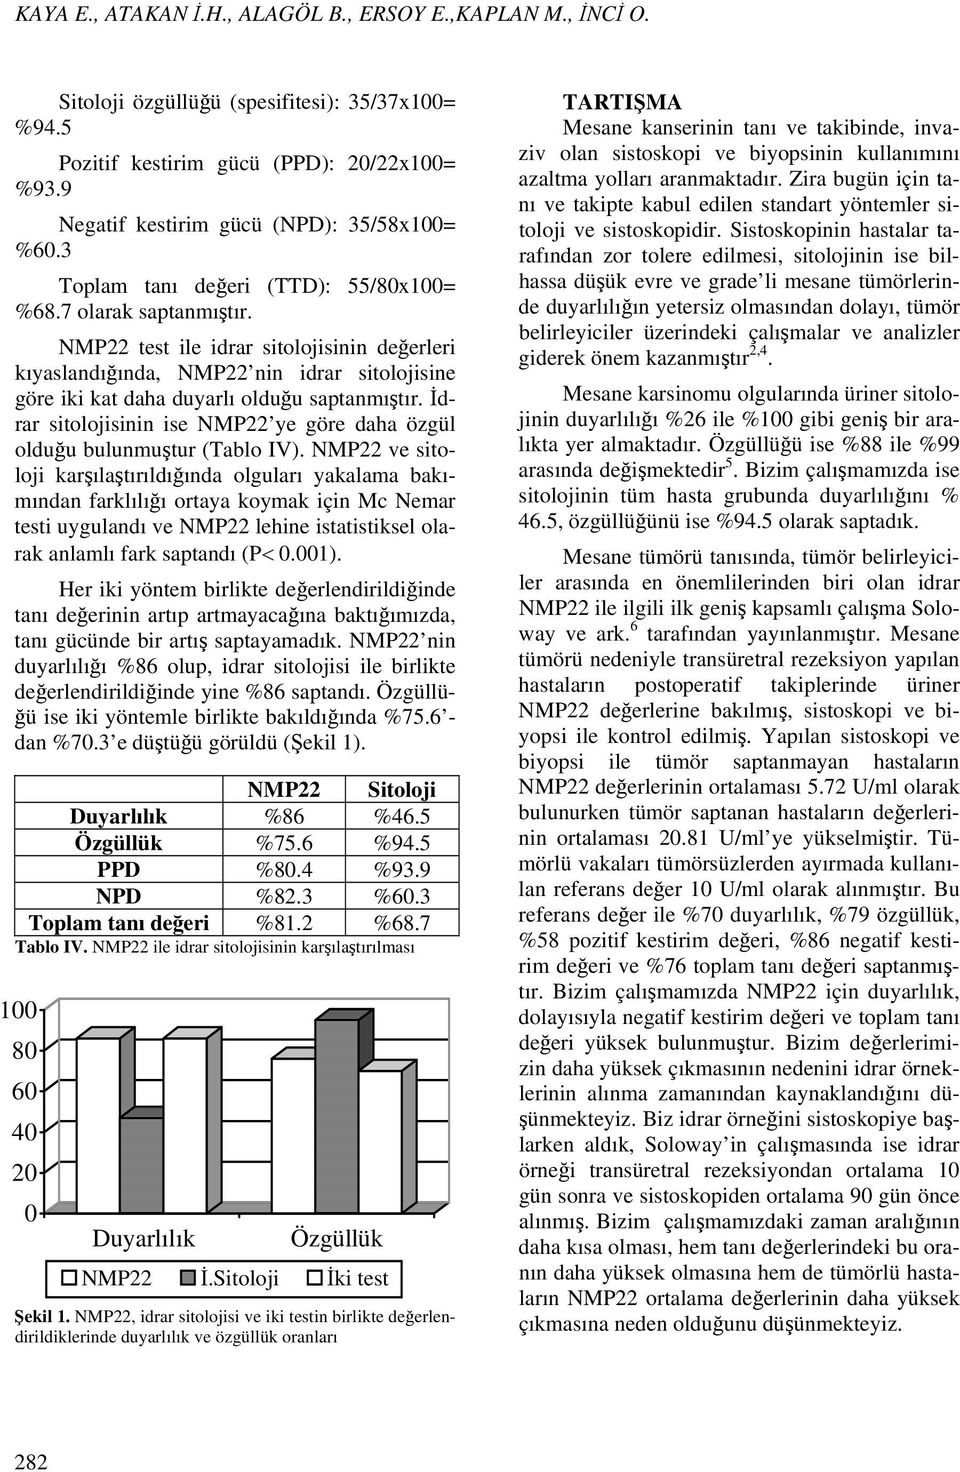 NMP22 test ile idrar sitolojisinin değerleri kıyaslandığında, NMP22 nin idrar sitolojisine göre iki kat daha duyarlı olduğu saptanmıştır.